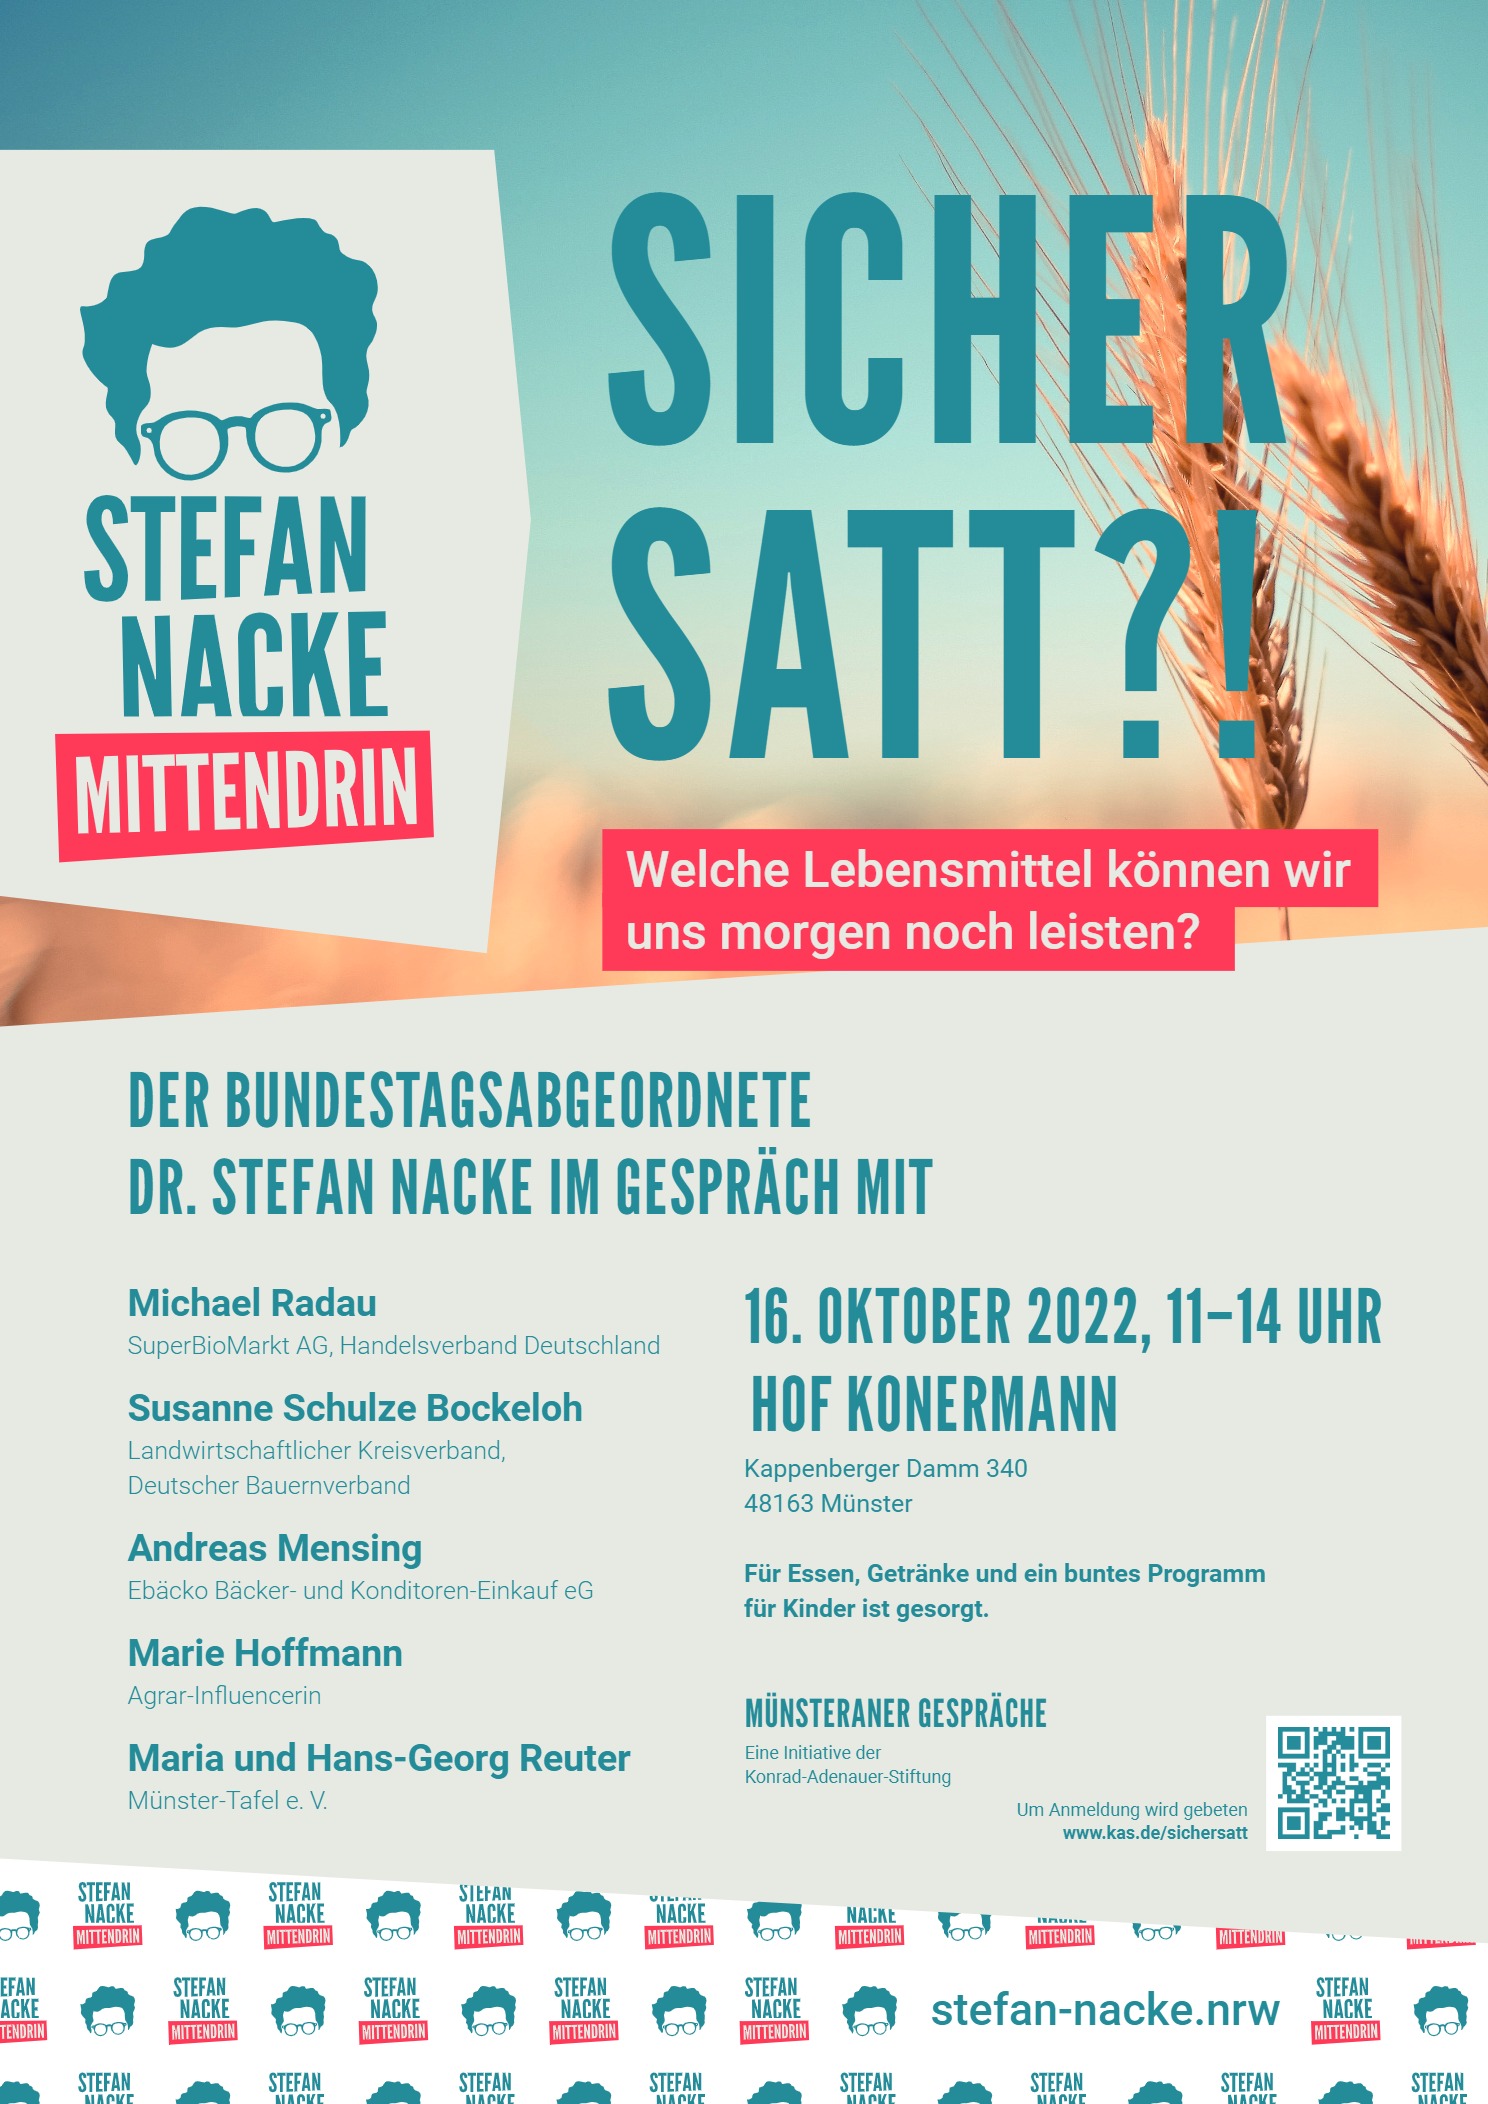 Bundestagsabgeordneter Stefan Nacke lädt ein zur Hofveranstaltung am Welternährungstag